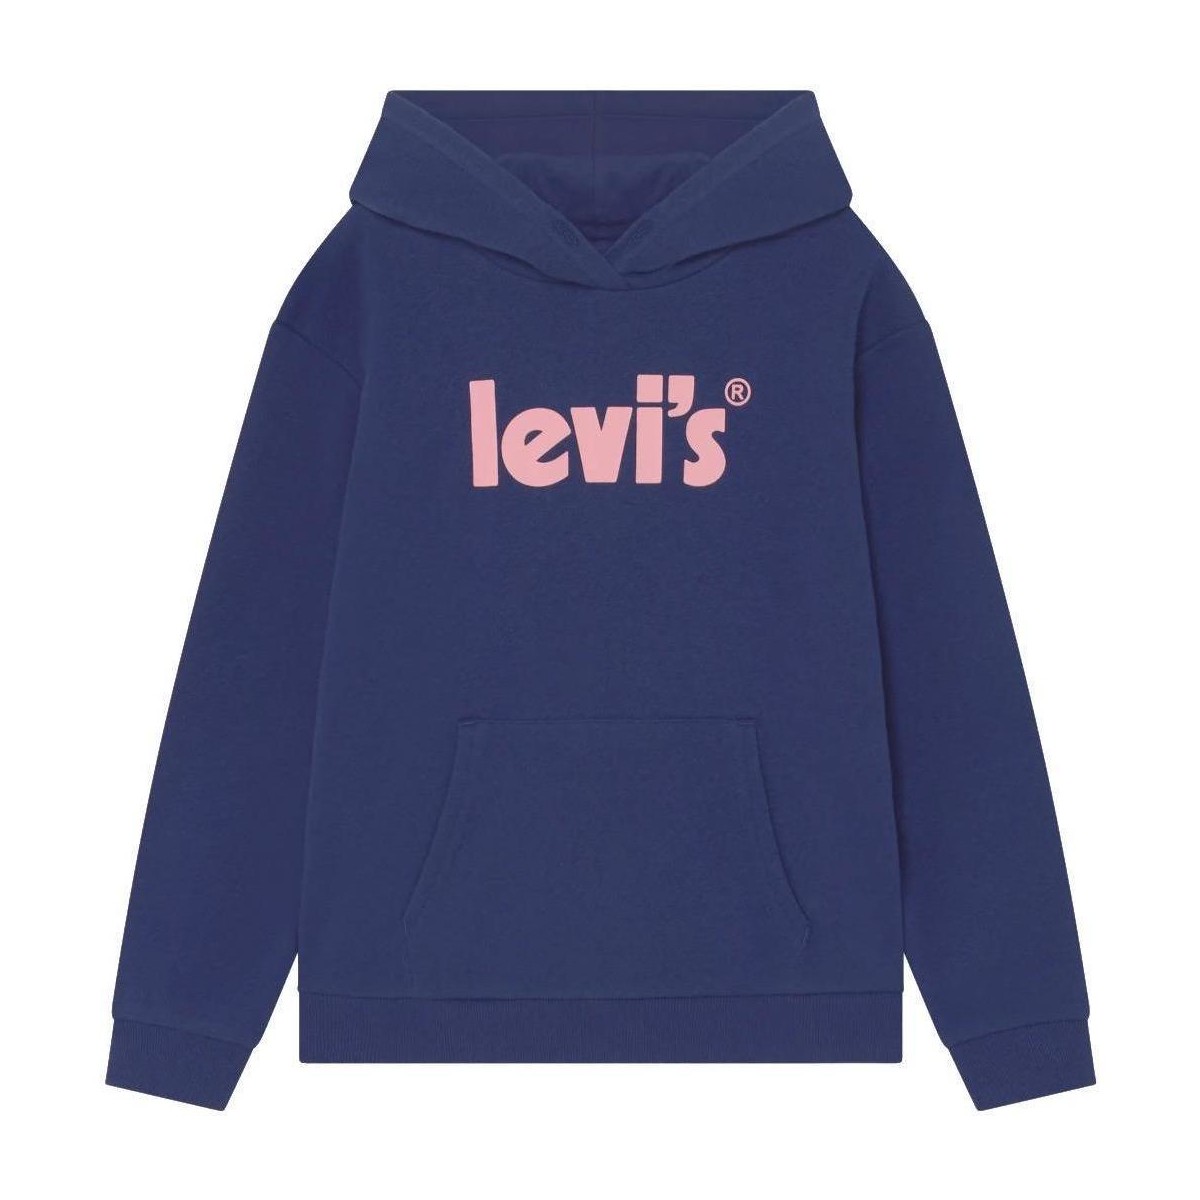 Vêtements Fille Sweats Levi's  Bleu